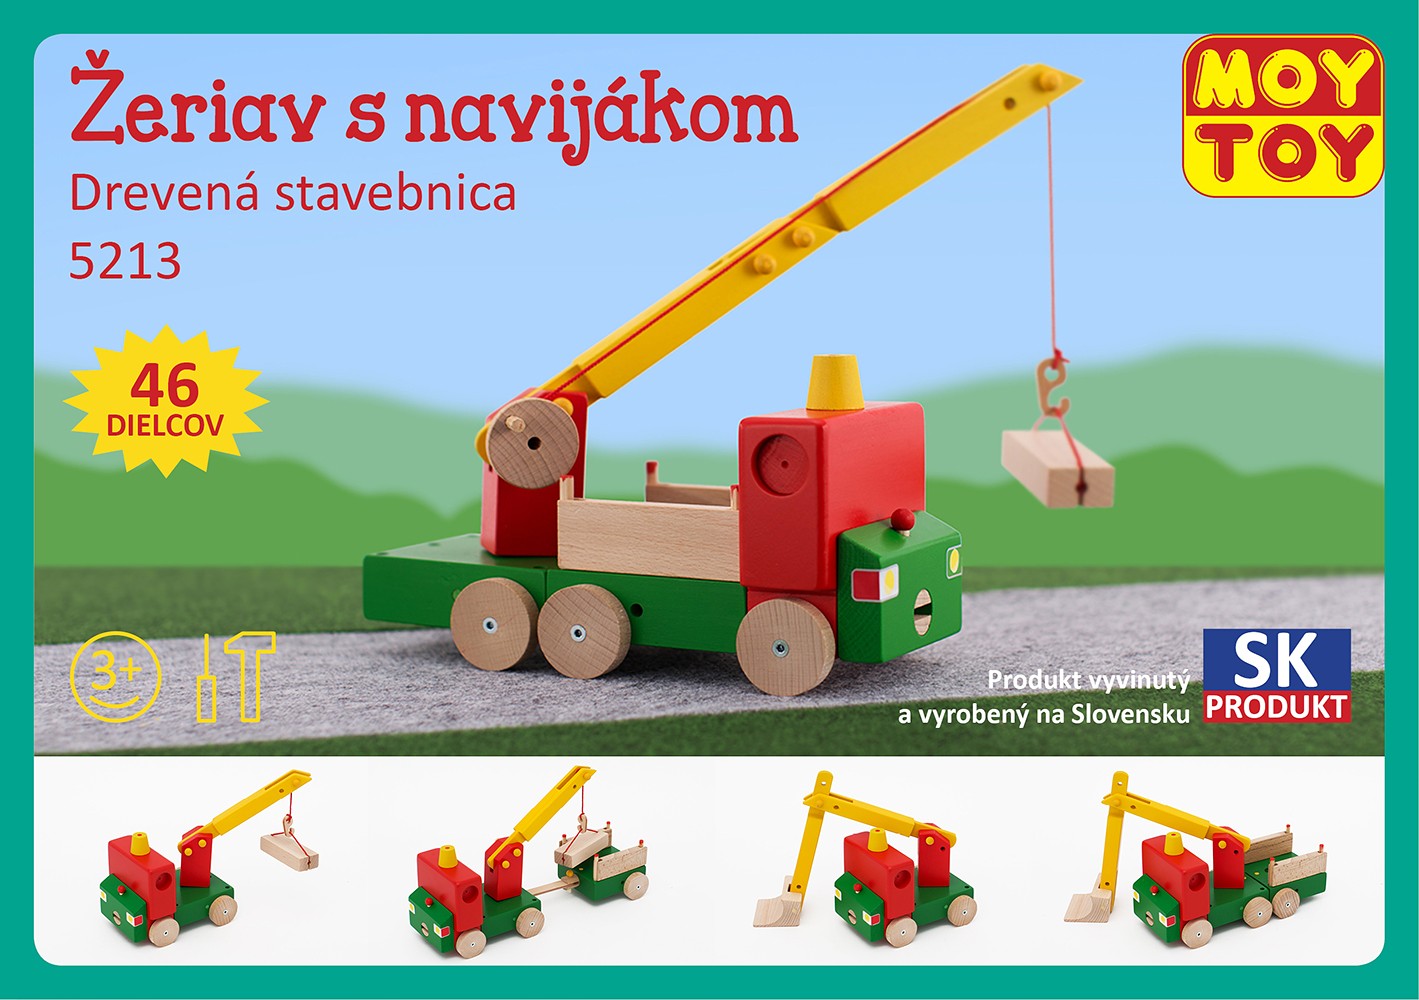 Moy Toy Dřevěná stavebnice Jeřáb s navijákem Moy Toy